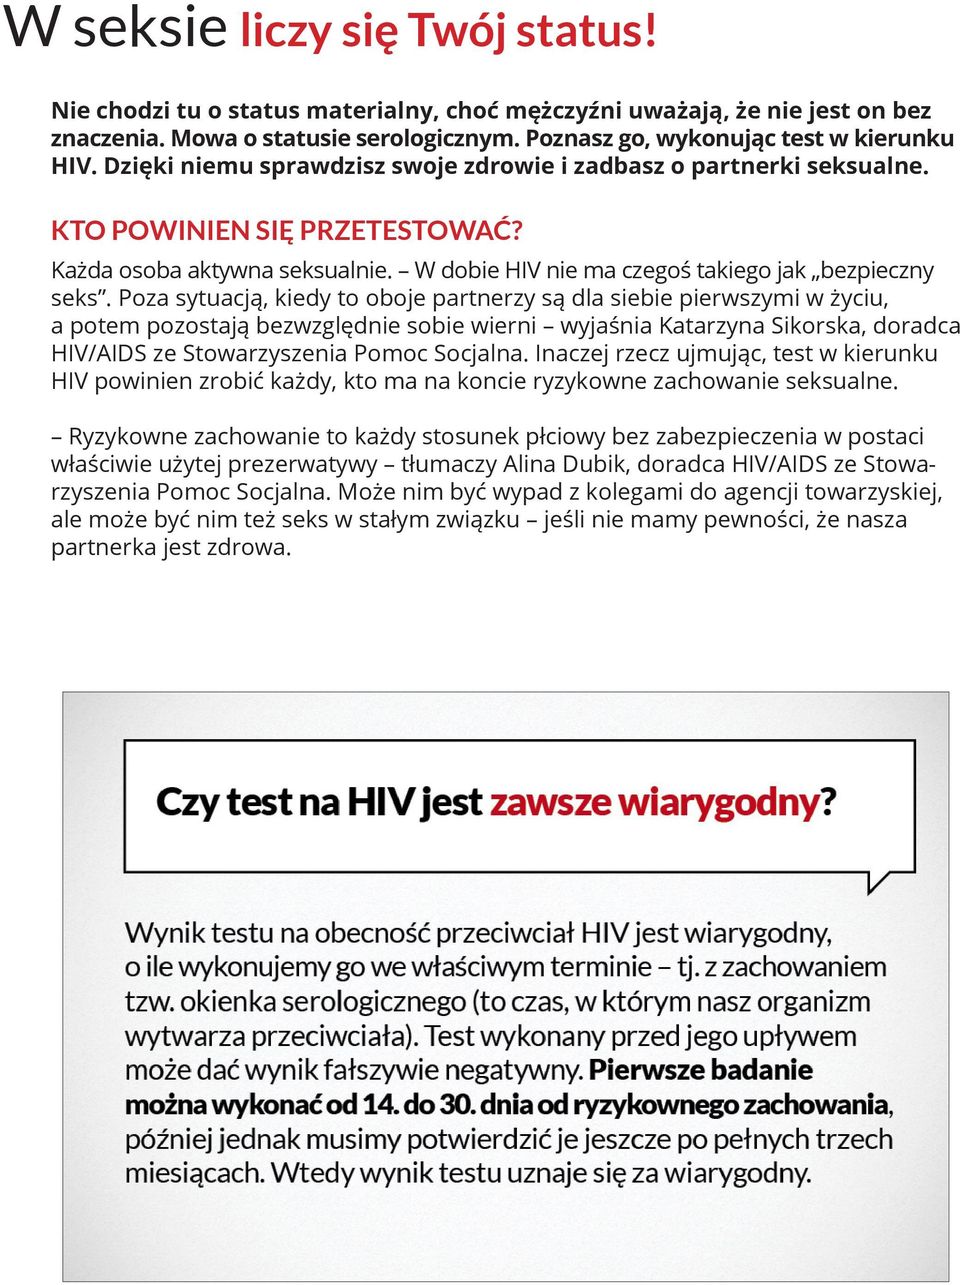 Poza sytuacją, kiedy to oboje partnerzy są dla siebie pierwszymi w życiu, a potem pozostają bezwzględnie sobie wierni wyjaśnia Katarzyna Sikorska, doradca HIV/AIDS ze Stowarzyszenia Pomoc Socjalna.